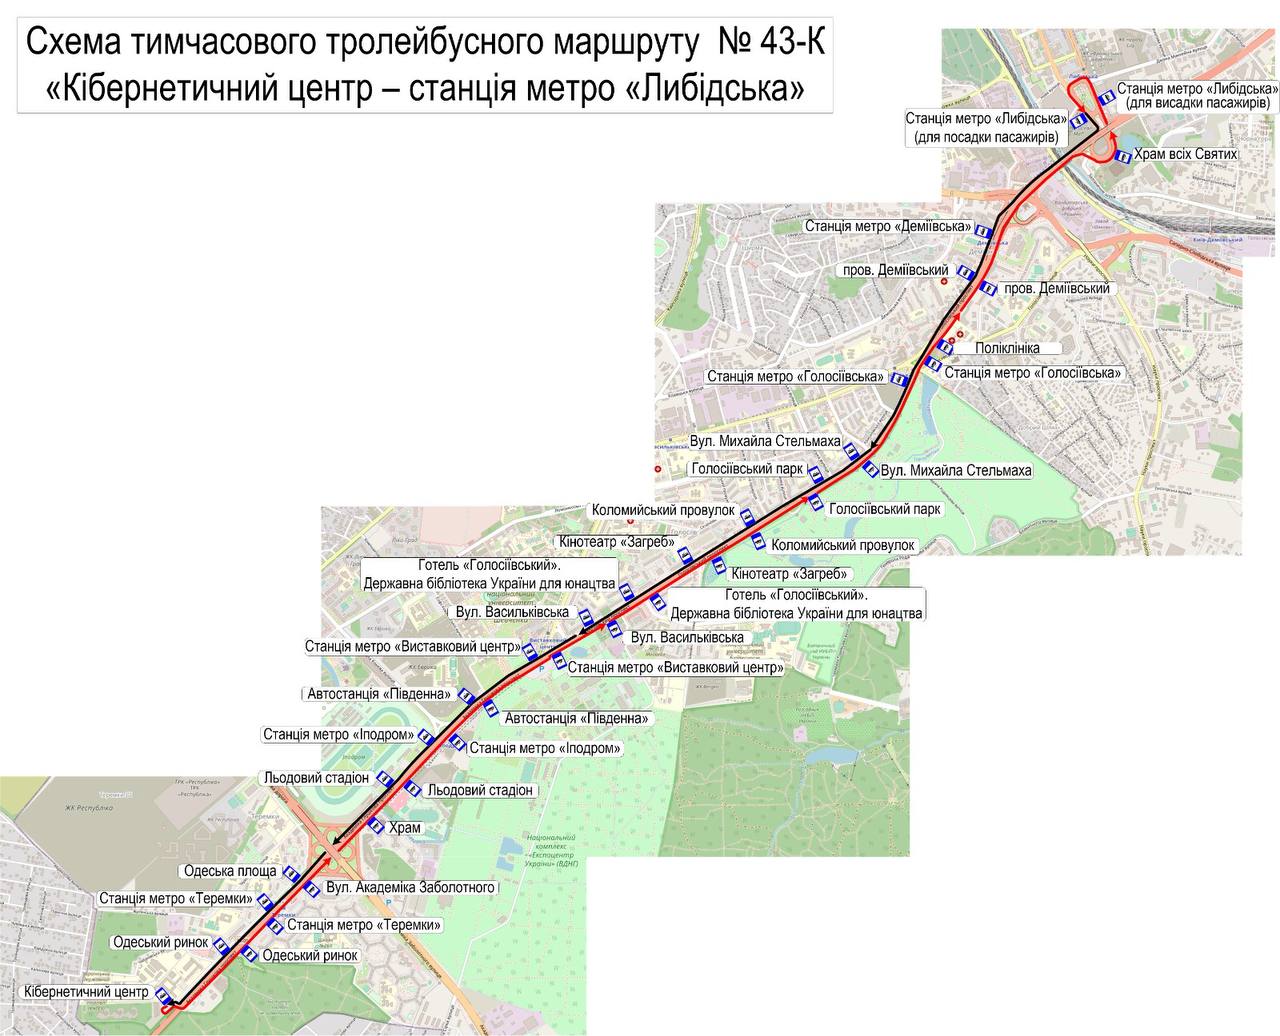 Киевский метрополитен - до начала строительства